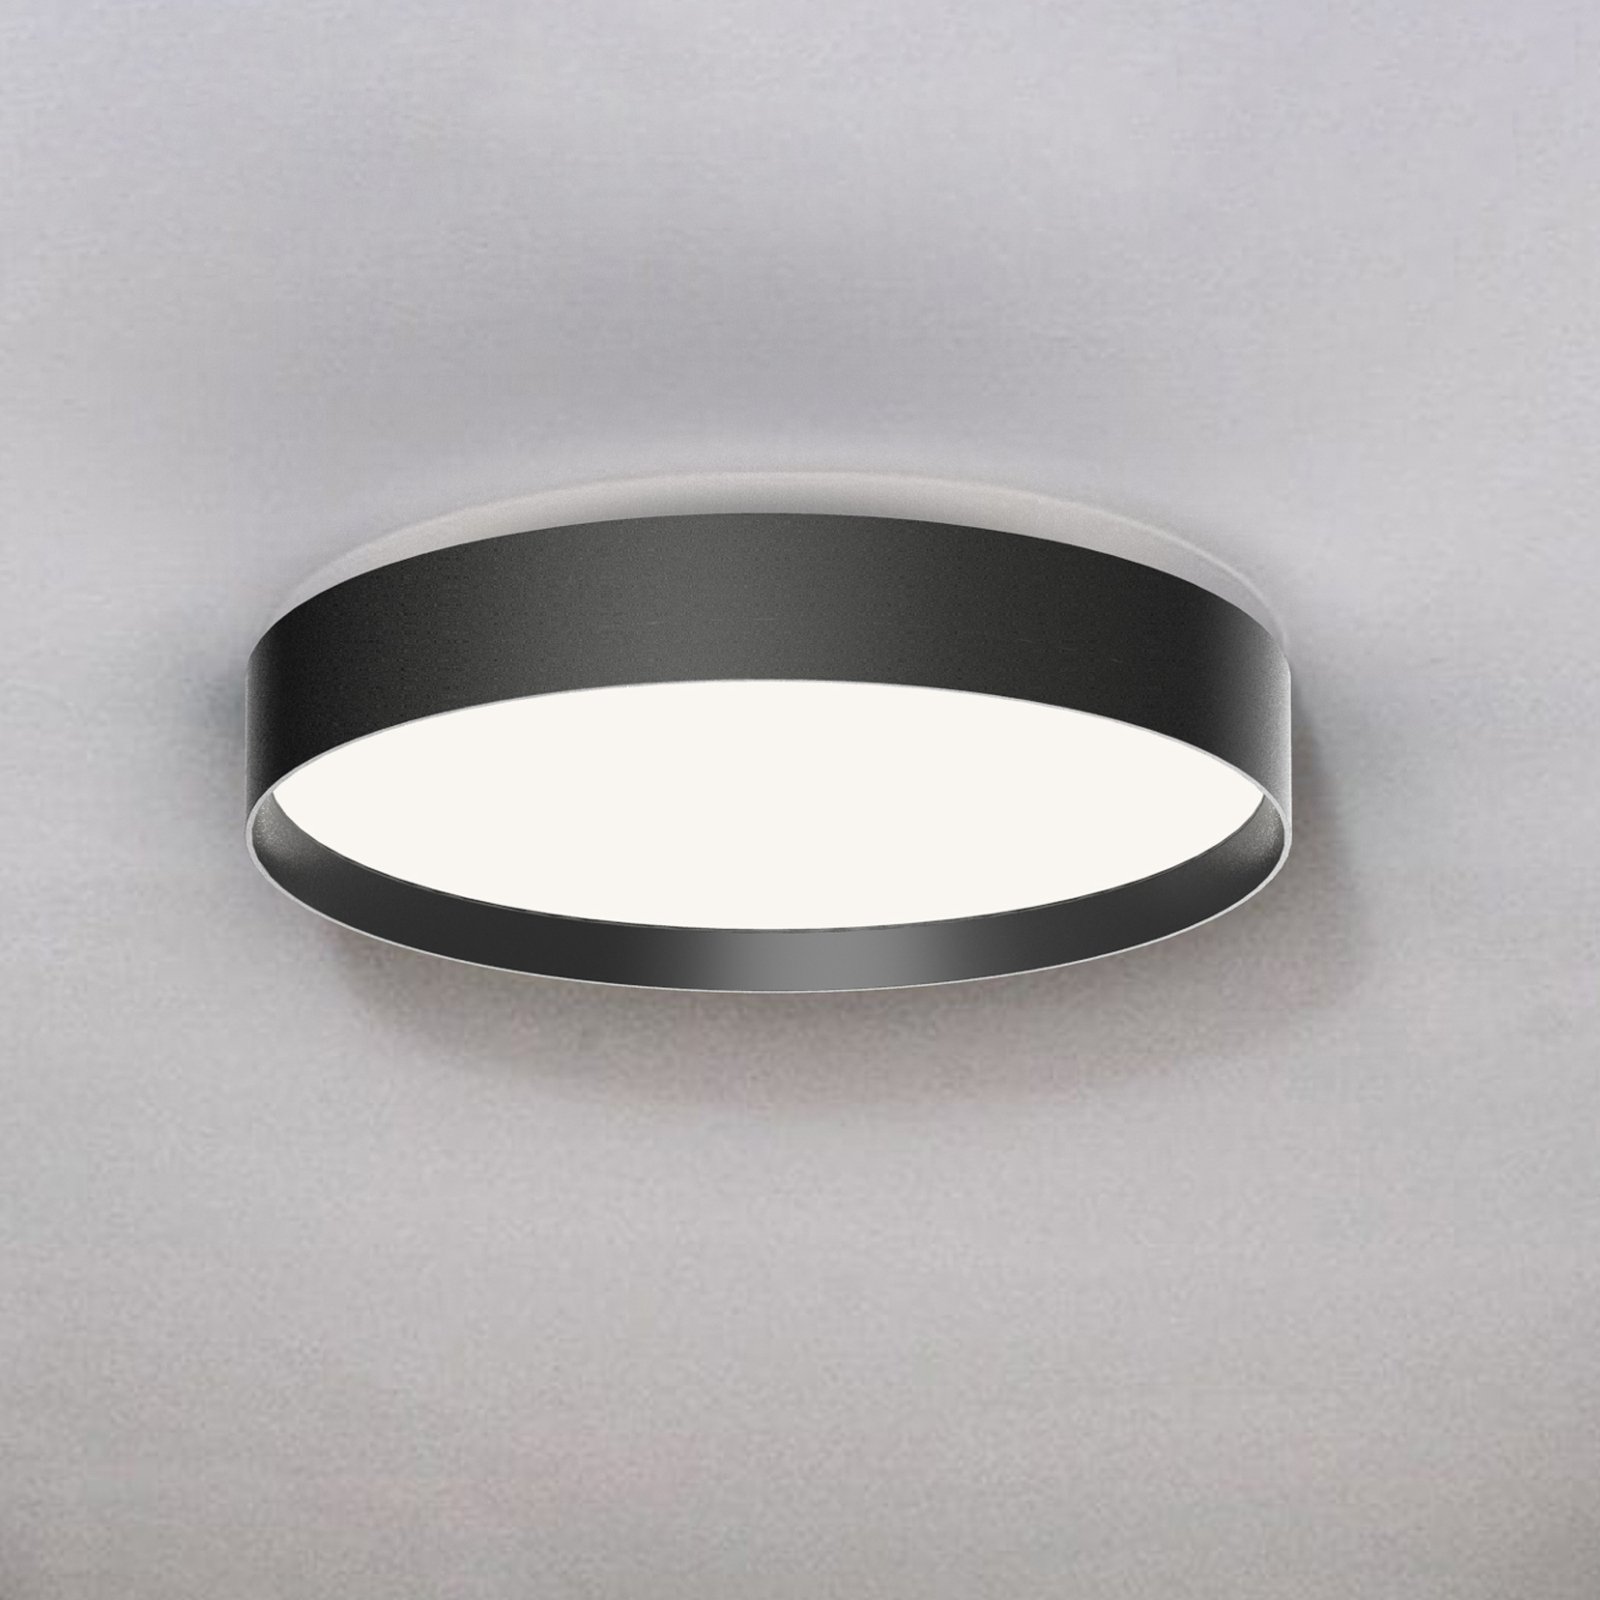 LOOM DESIGN Lucia LED ceiling light Ø35cm black